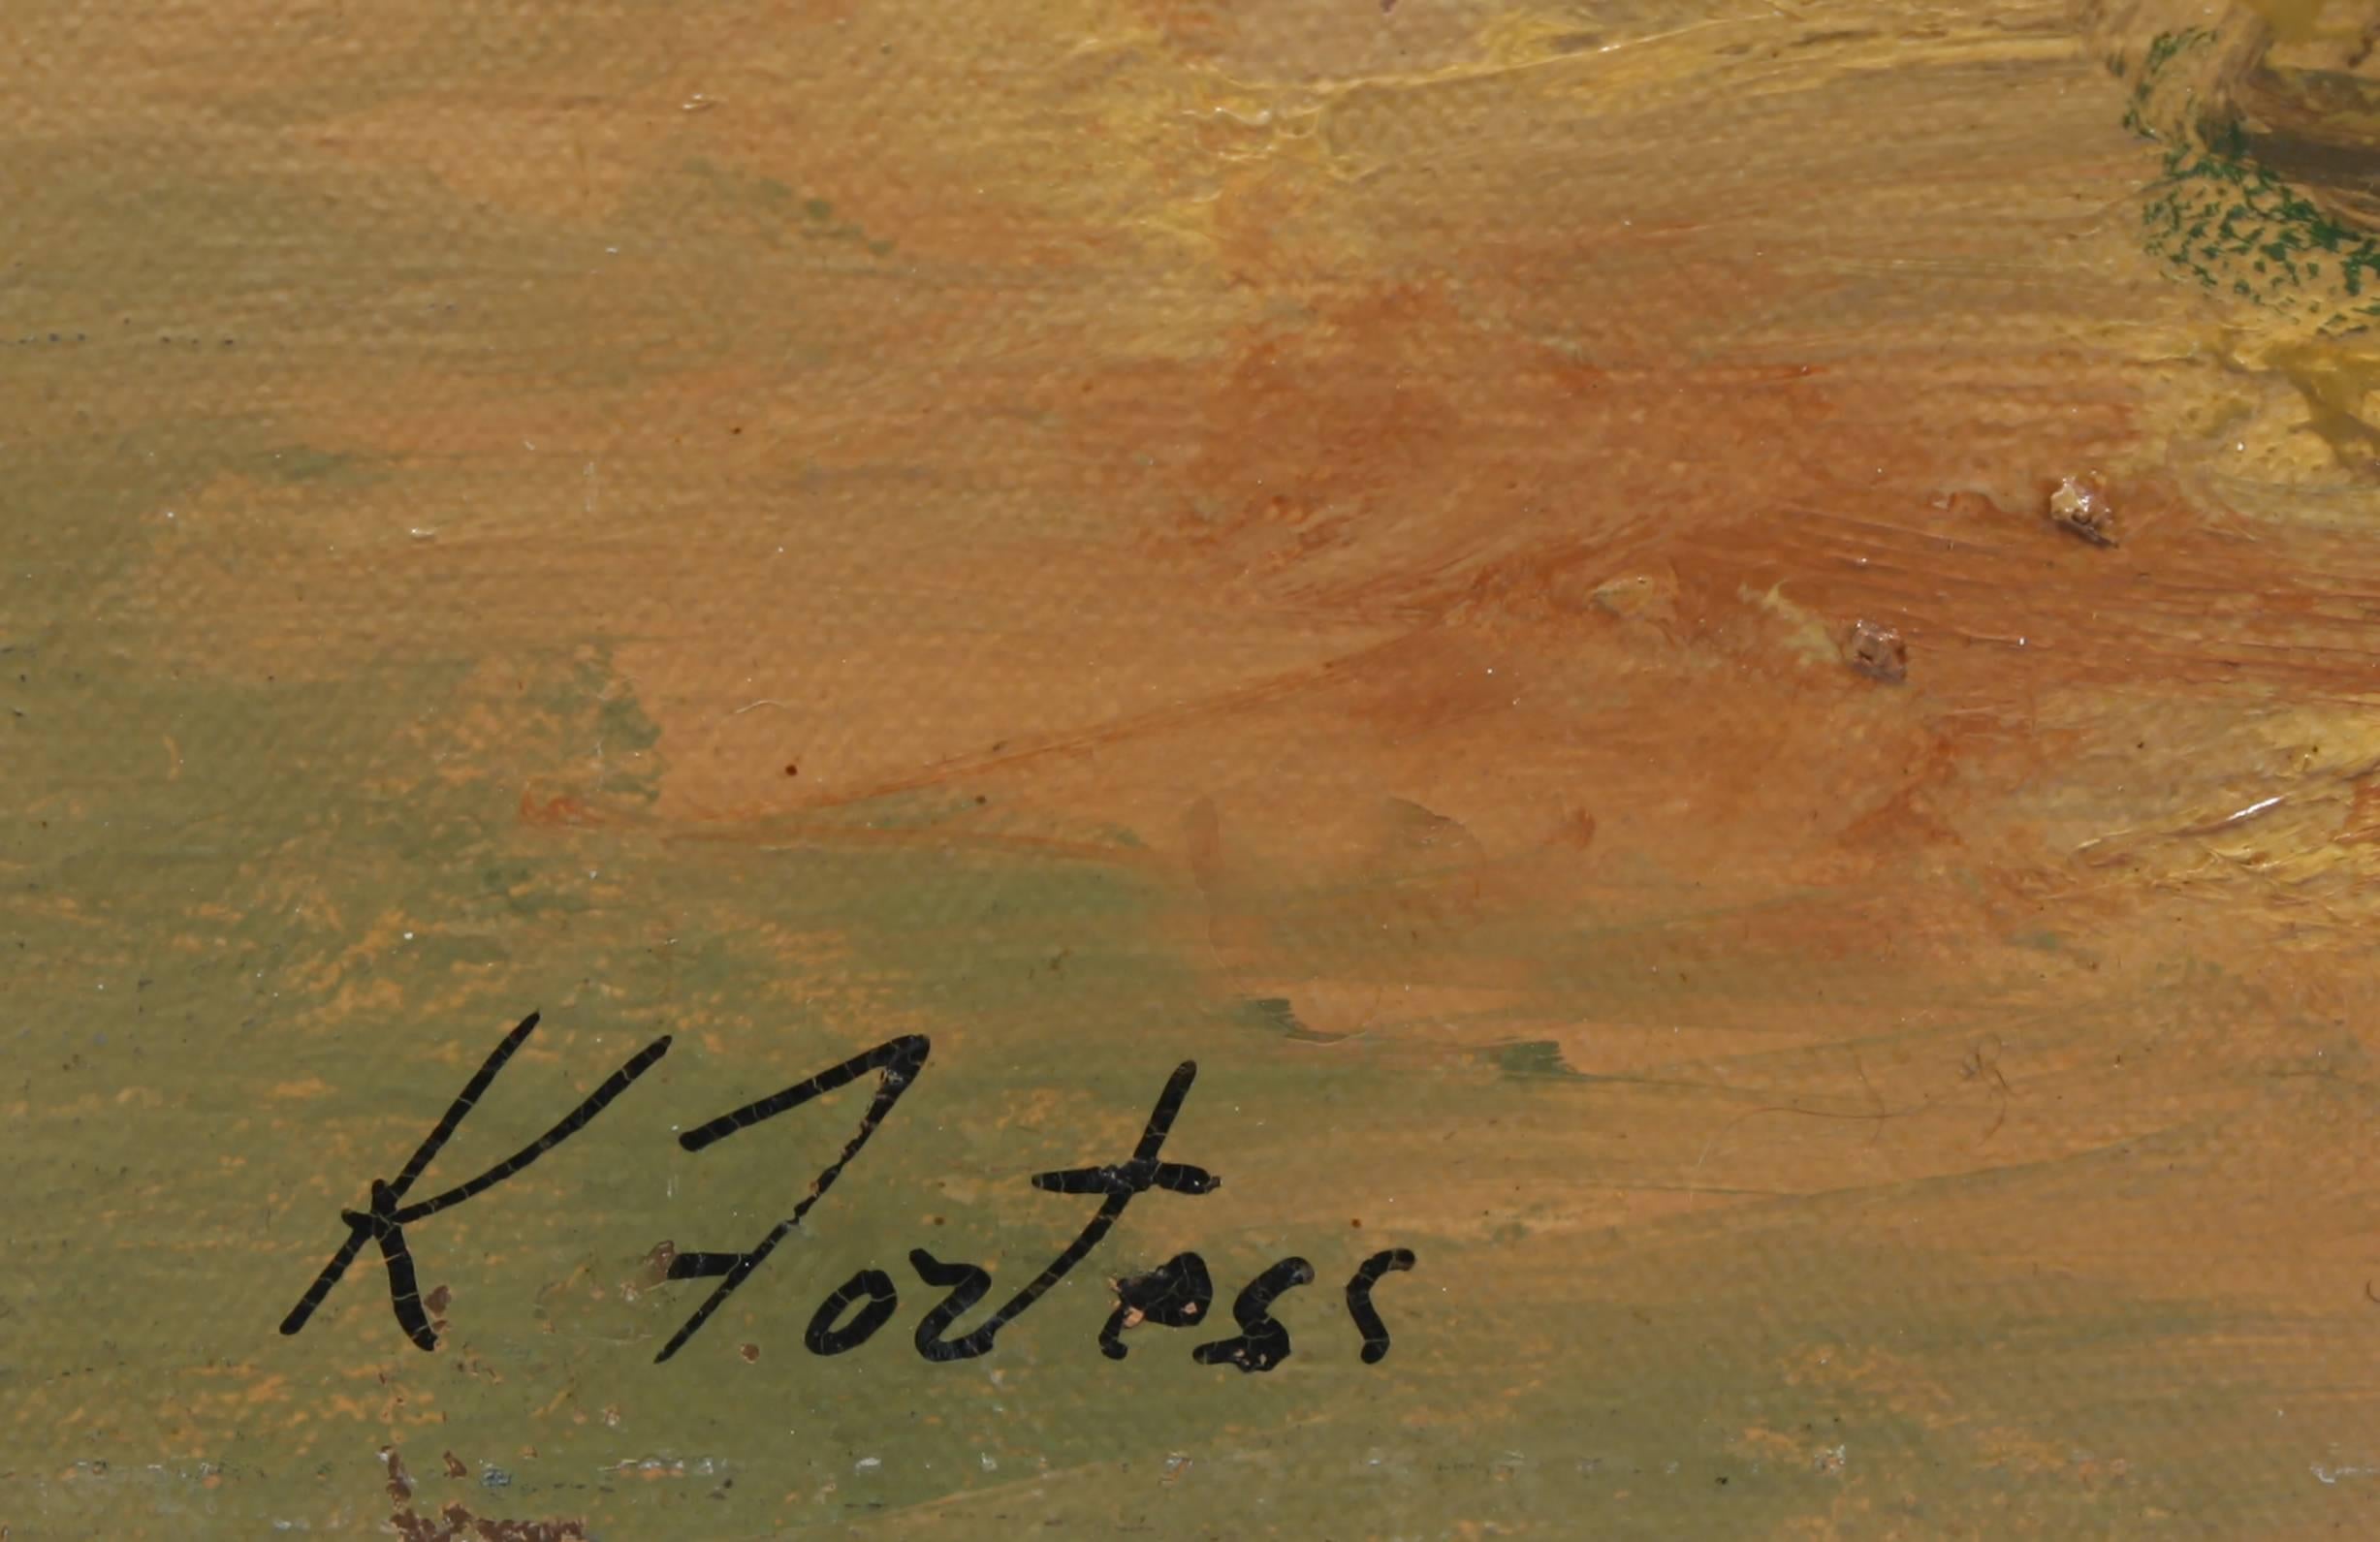 Ein modernistisches Ölgemälde des New Yorker Modernisten Karl Fortress (1907-1993).  Das Gemälde stammt aus dem Cornell Art Museum.  In ausgezeichnetem Originalzustand.  Signiert unten links 